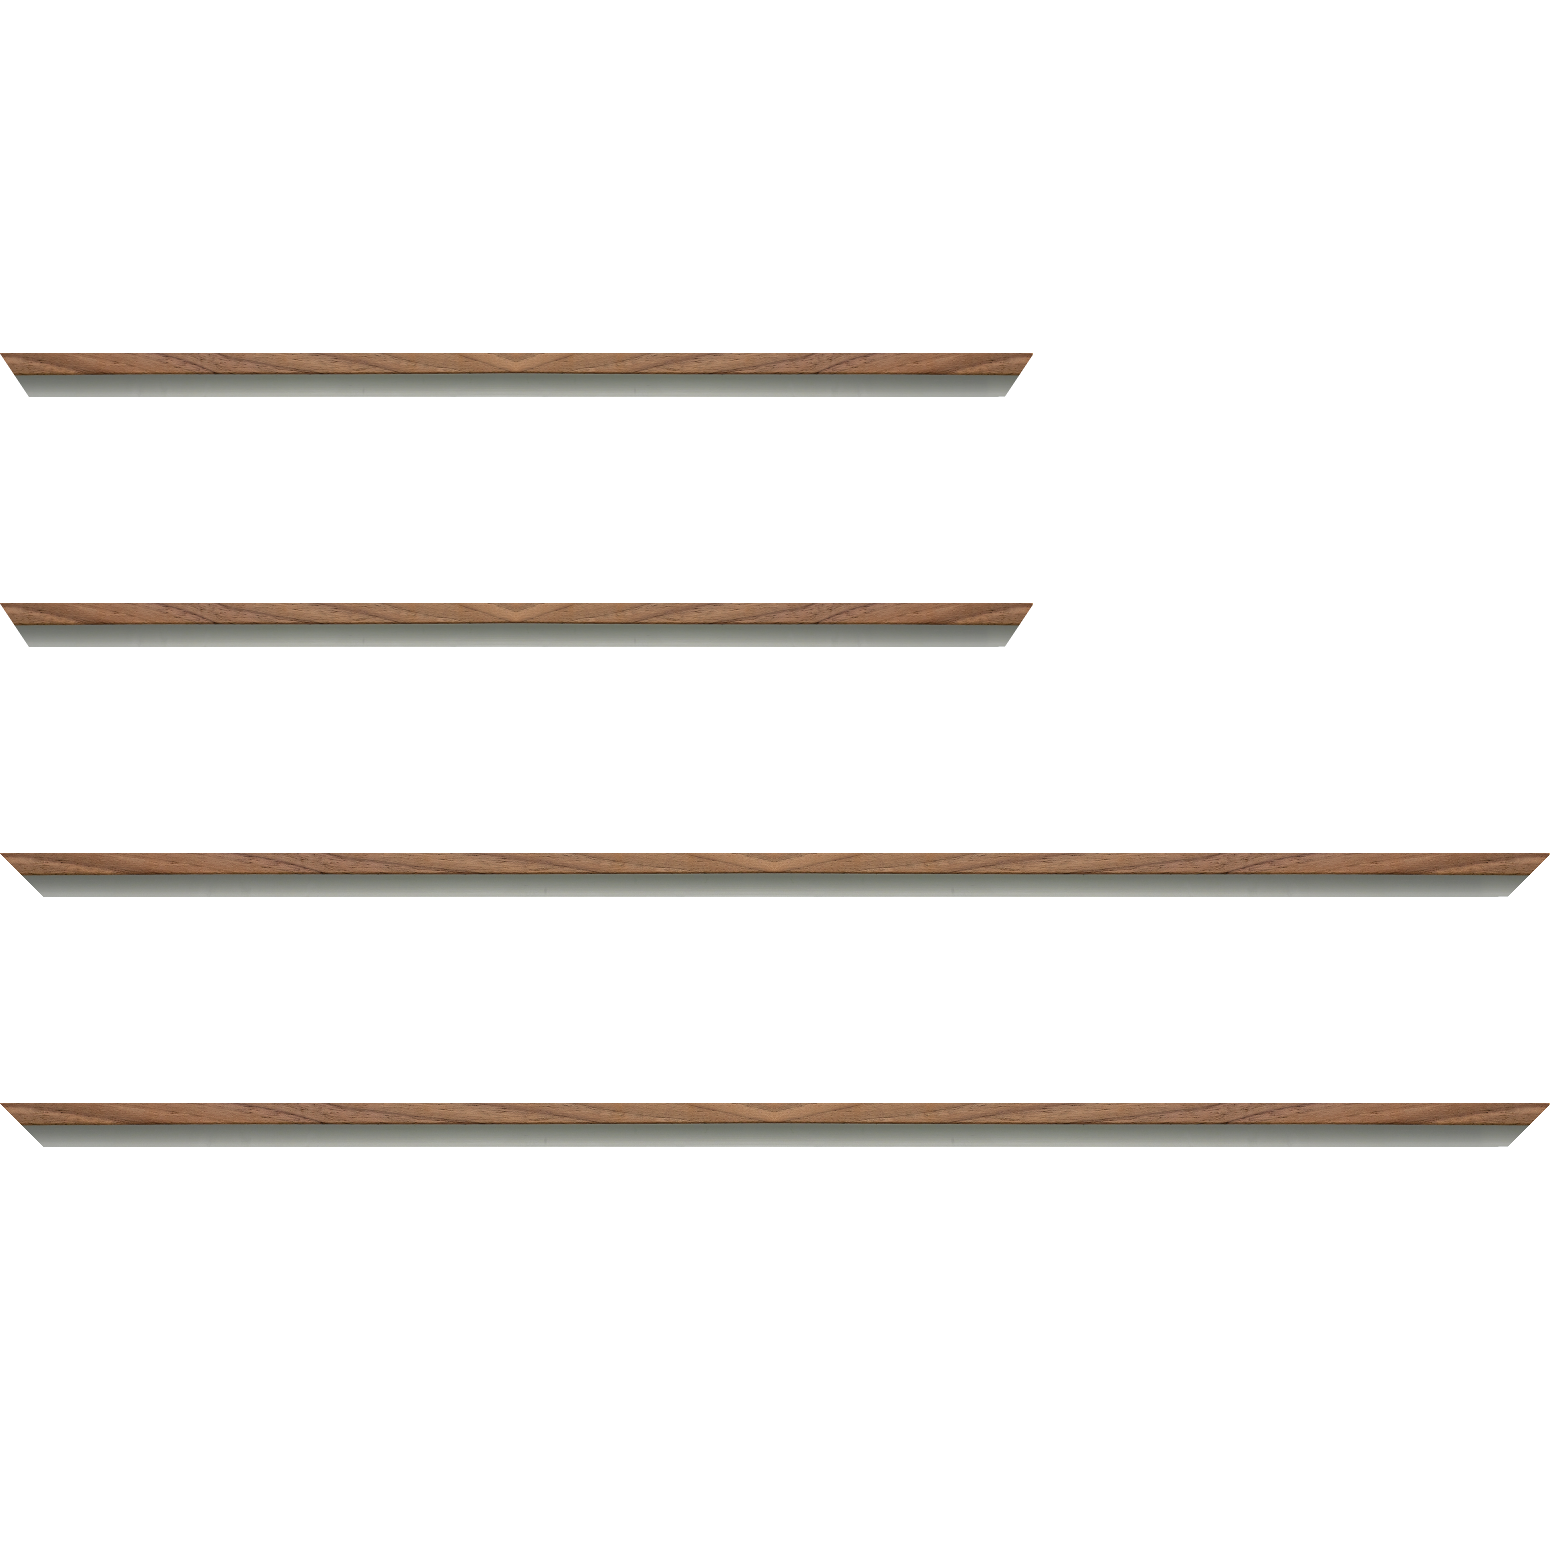 Baguette aluminium profil plat largeur 8mm, placage véritable noyer ,(le sujet qui sera glissé dans le cadre sera en retrait de 6mm de la face du cadre assurant un effet très contemporain) mise en place du sujet rapide et simple: assemblage du cadre par double équerre à vis (livré avec le système d'accrochage qui se glisse dans le profilé) encadrement non assemblé,  livré avec son sachet d'accessoires